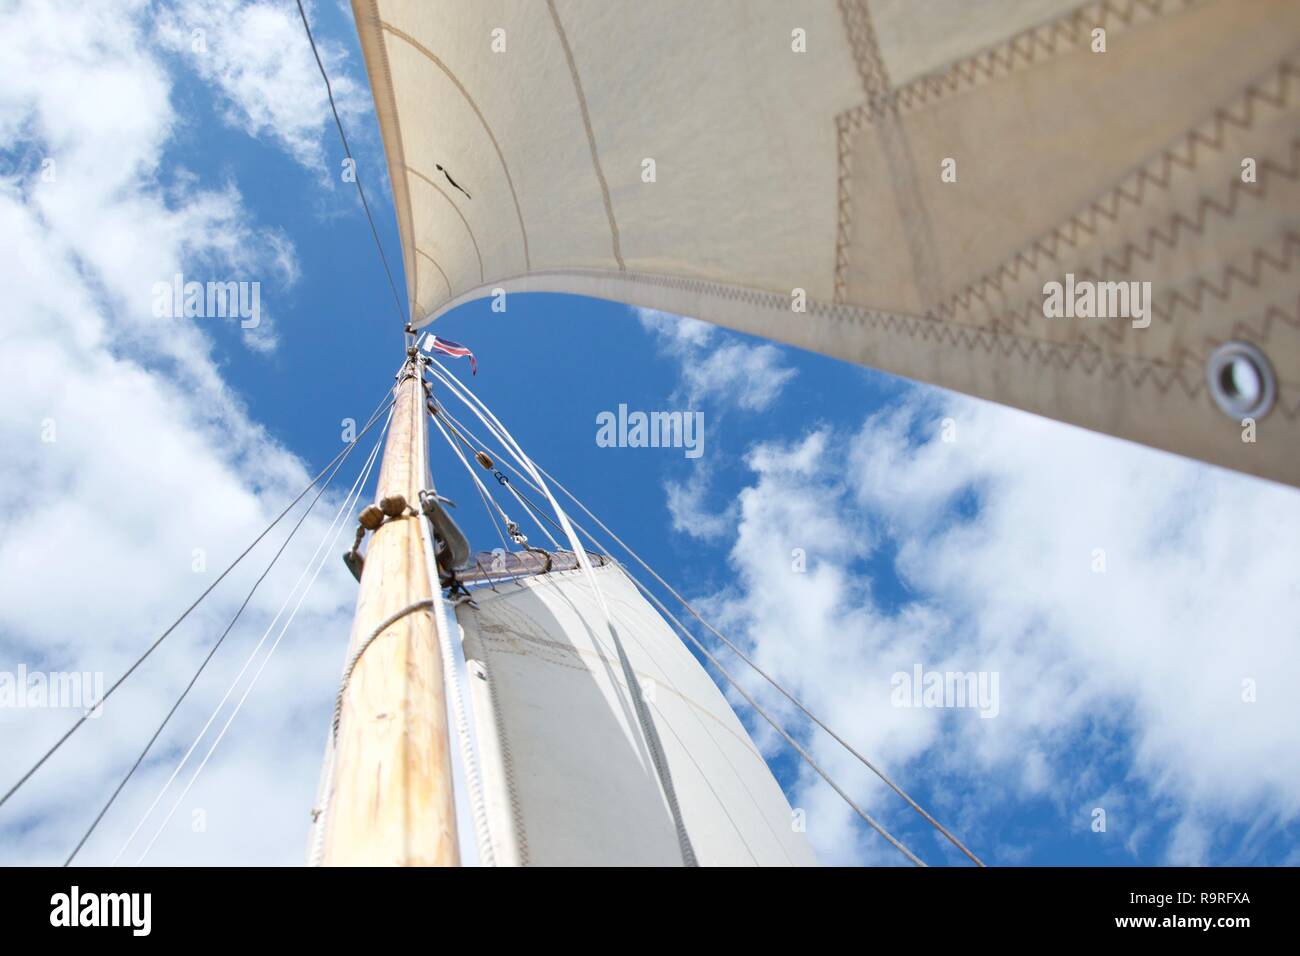 Cercando il montante su un tradizionale gaff truccate yacht / Barca a vela, contro un cielo azzurro con poche nuvole bianche. È ventoso e luminosa e la fo Foto Stock